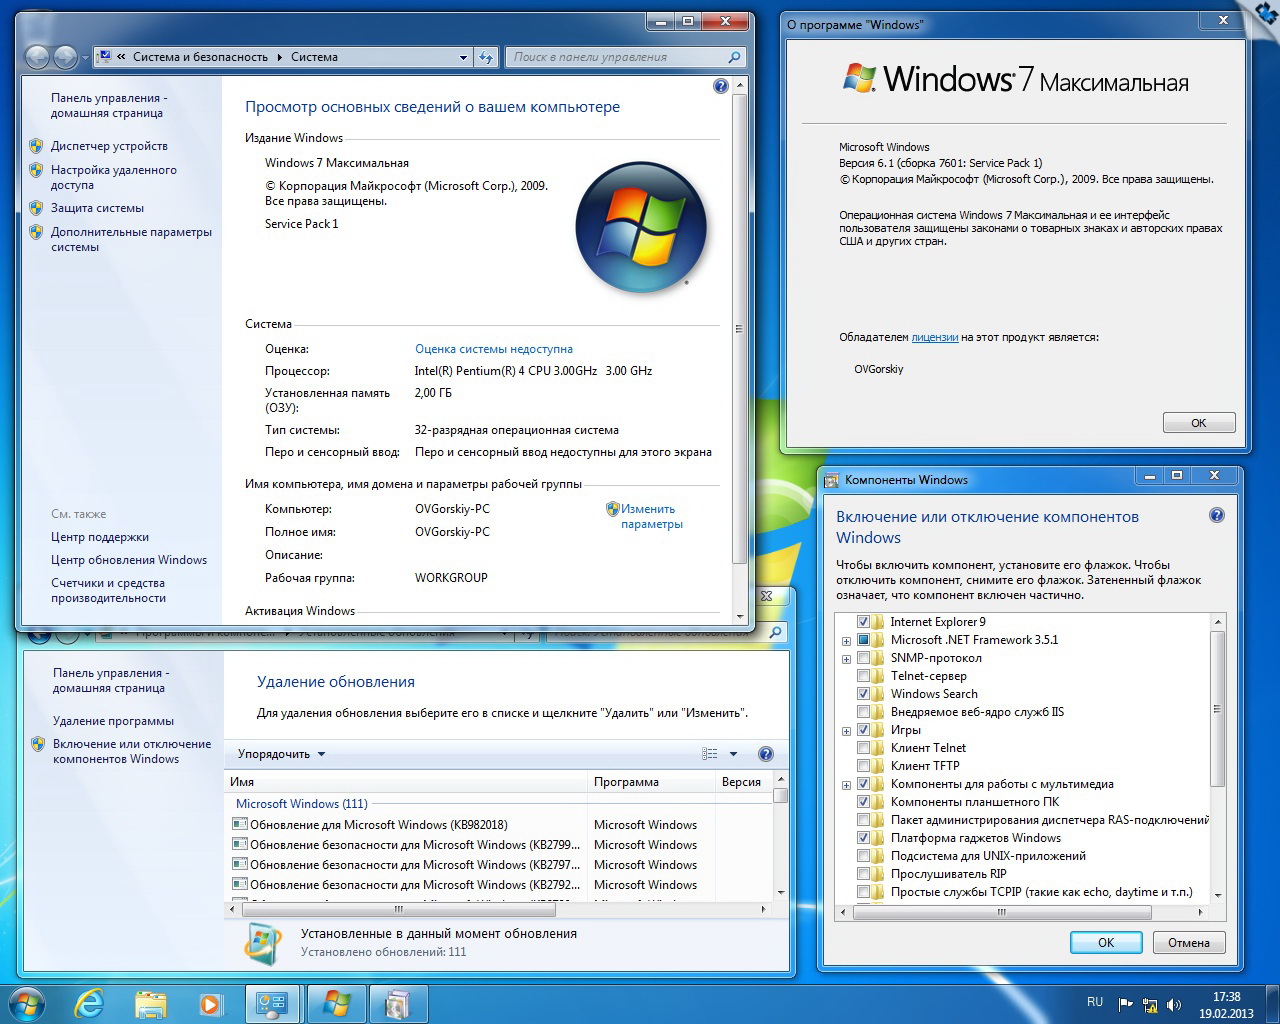 Windows 7 с установленными программами